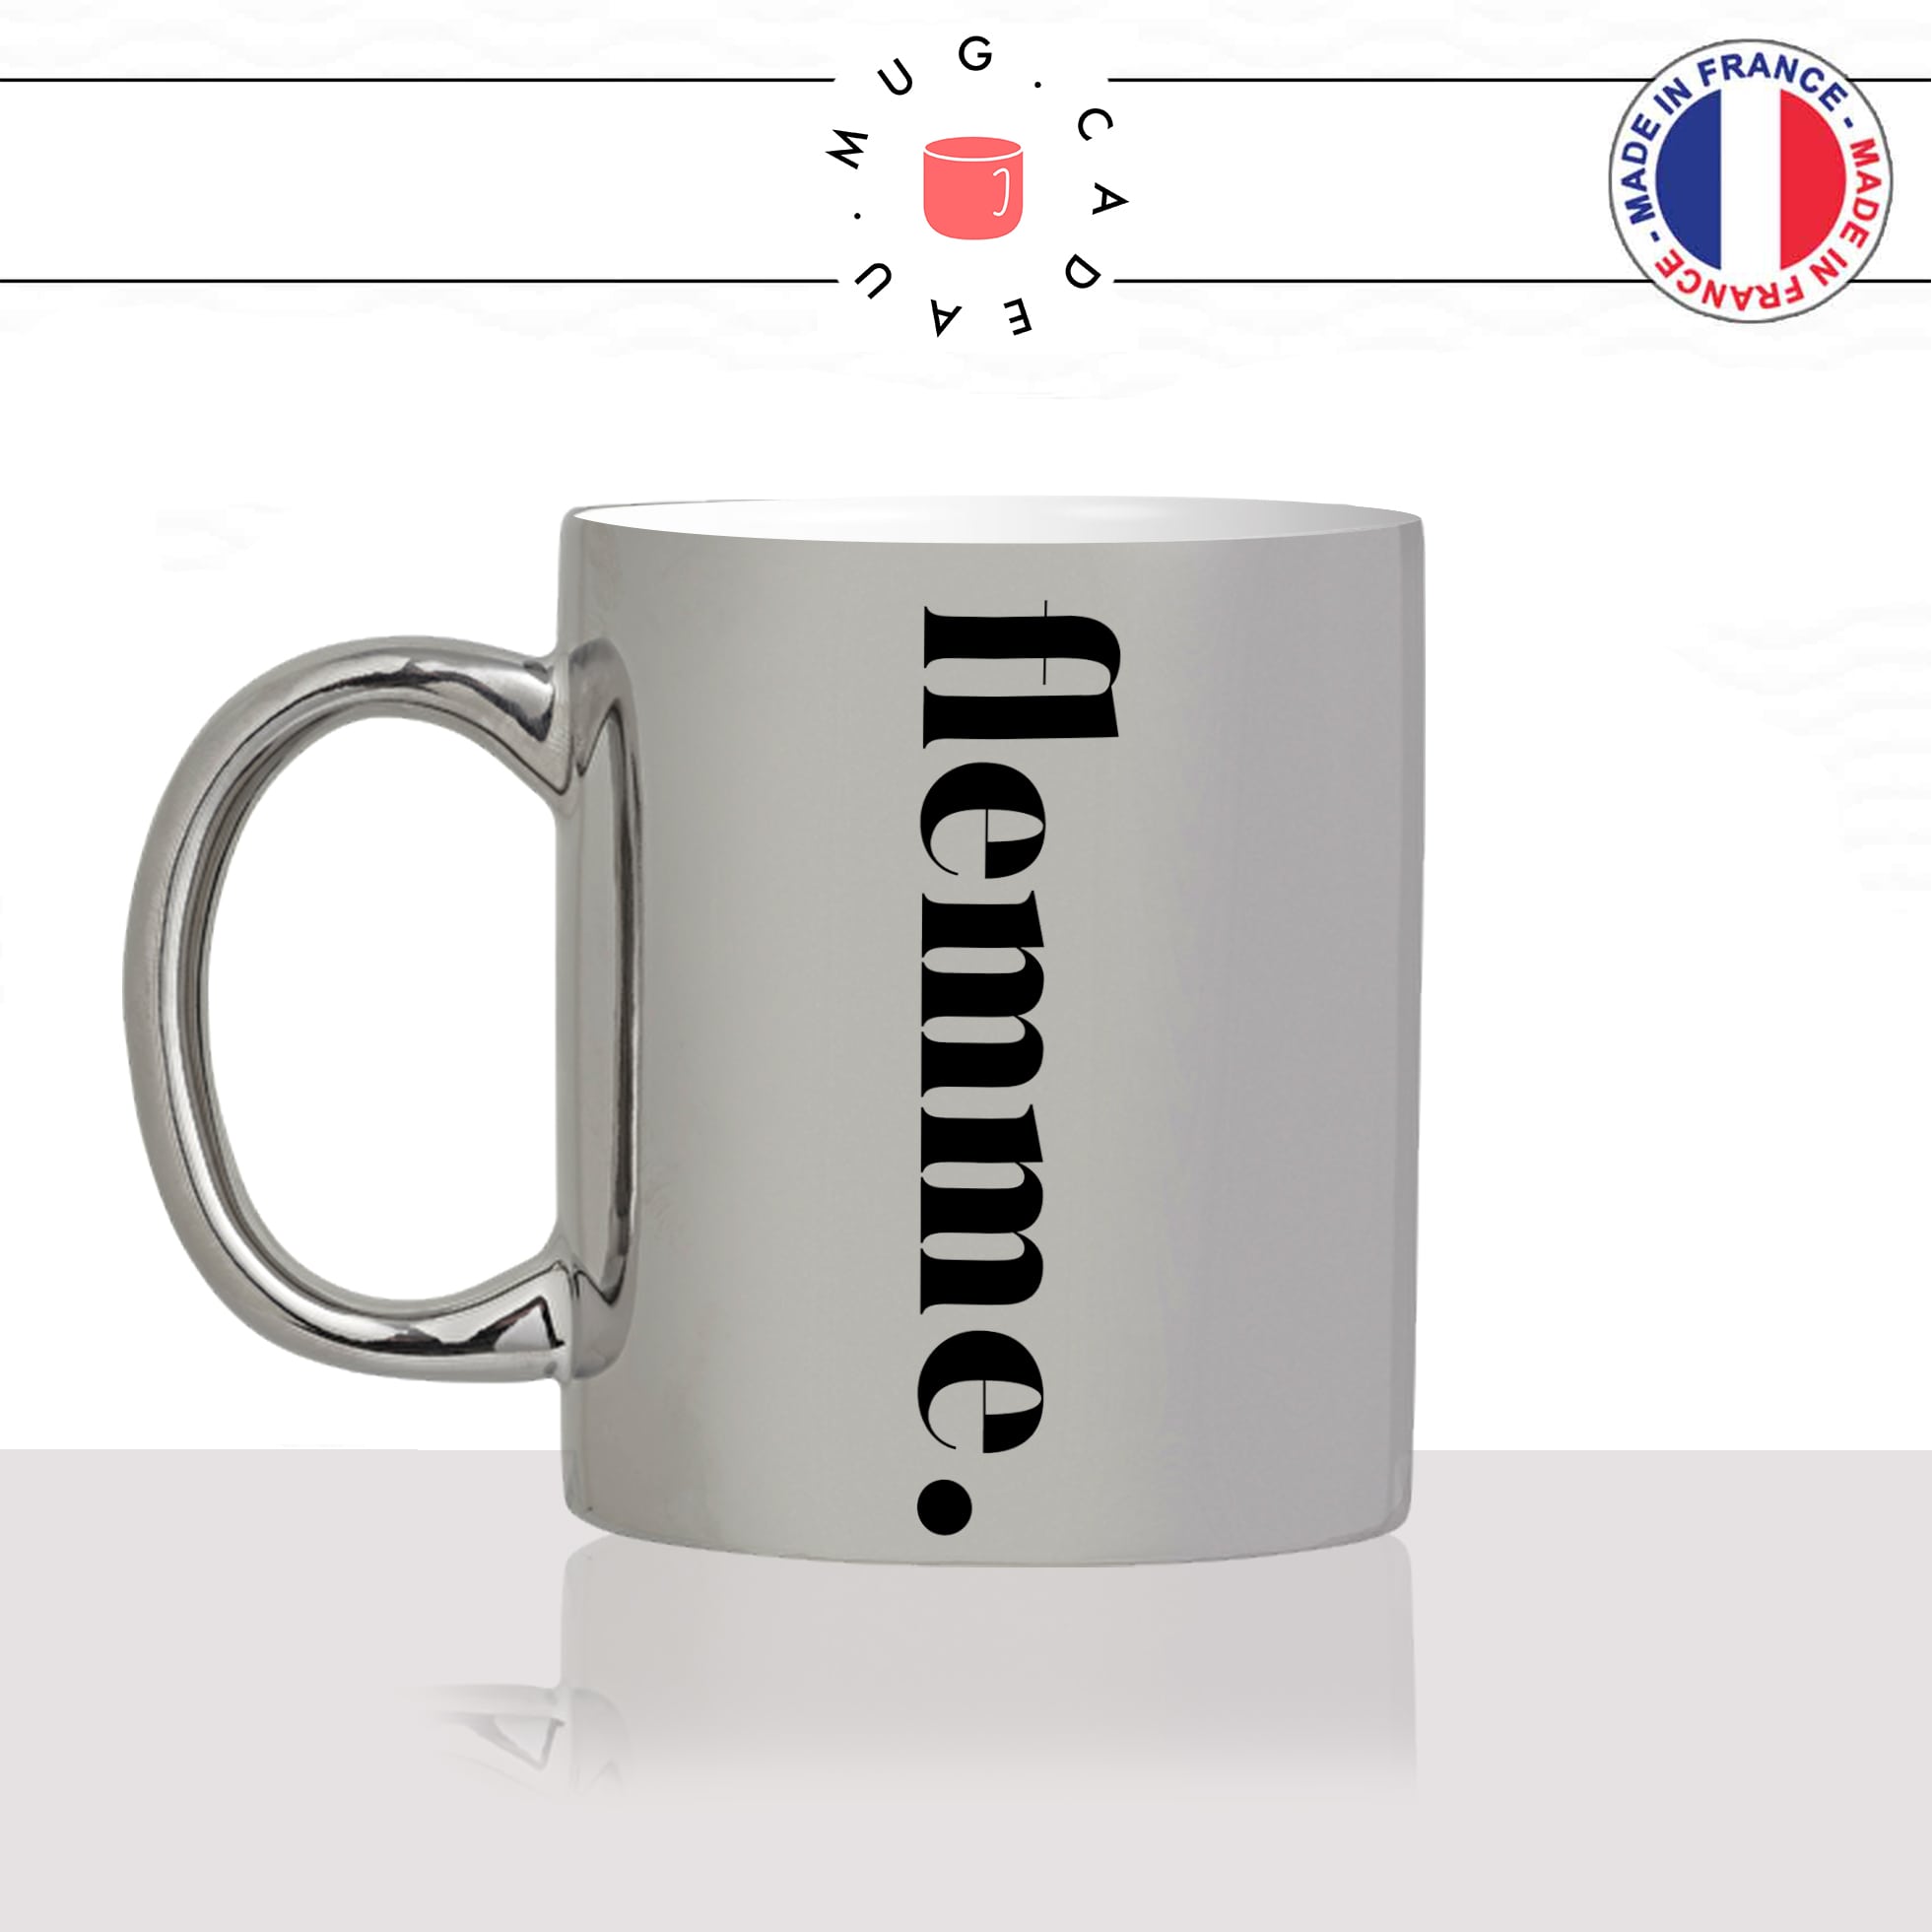 mug-tasse-silver-argenté-flemme-calligraphie-lettrine-mot-sieste-week-end-couple-décoration-amie-idée-cadeau-original-personnalisé-café-thé-min